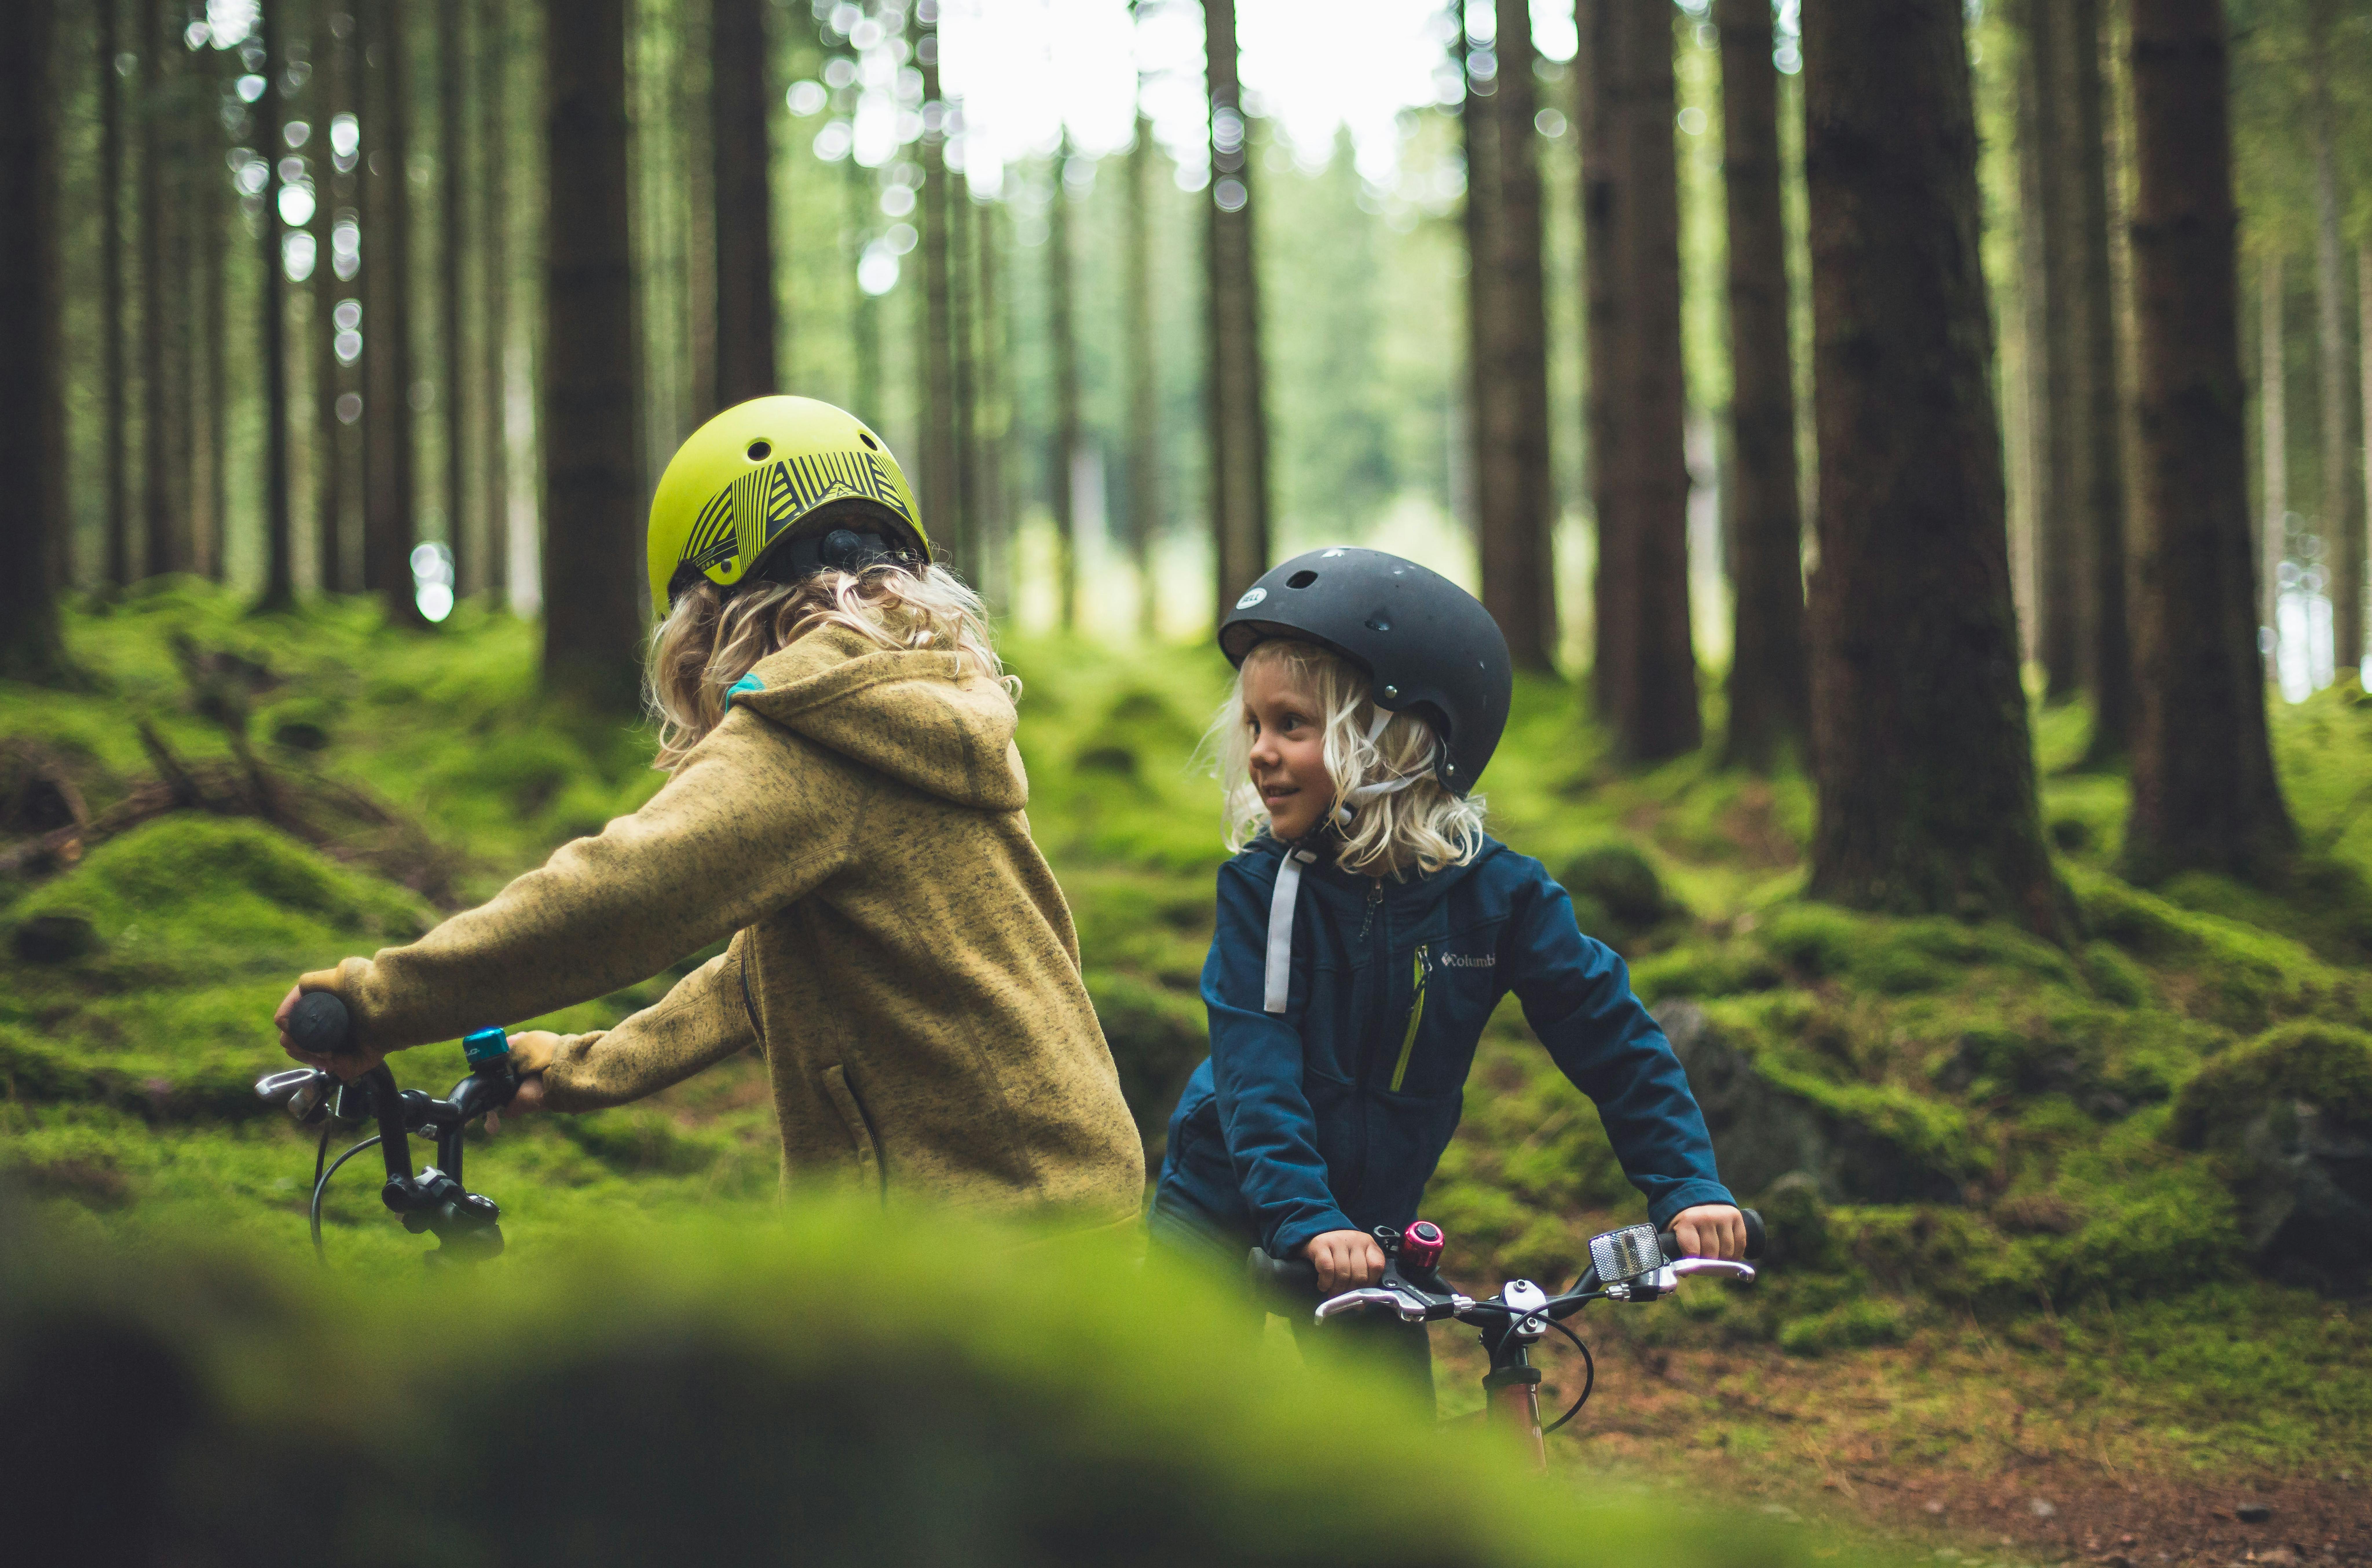 Zwei Kinder auf Rädern im Wald.